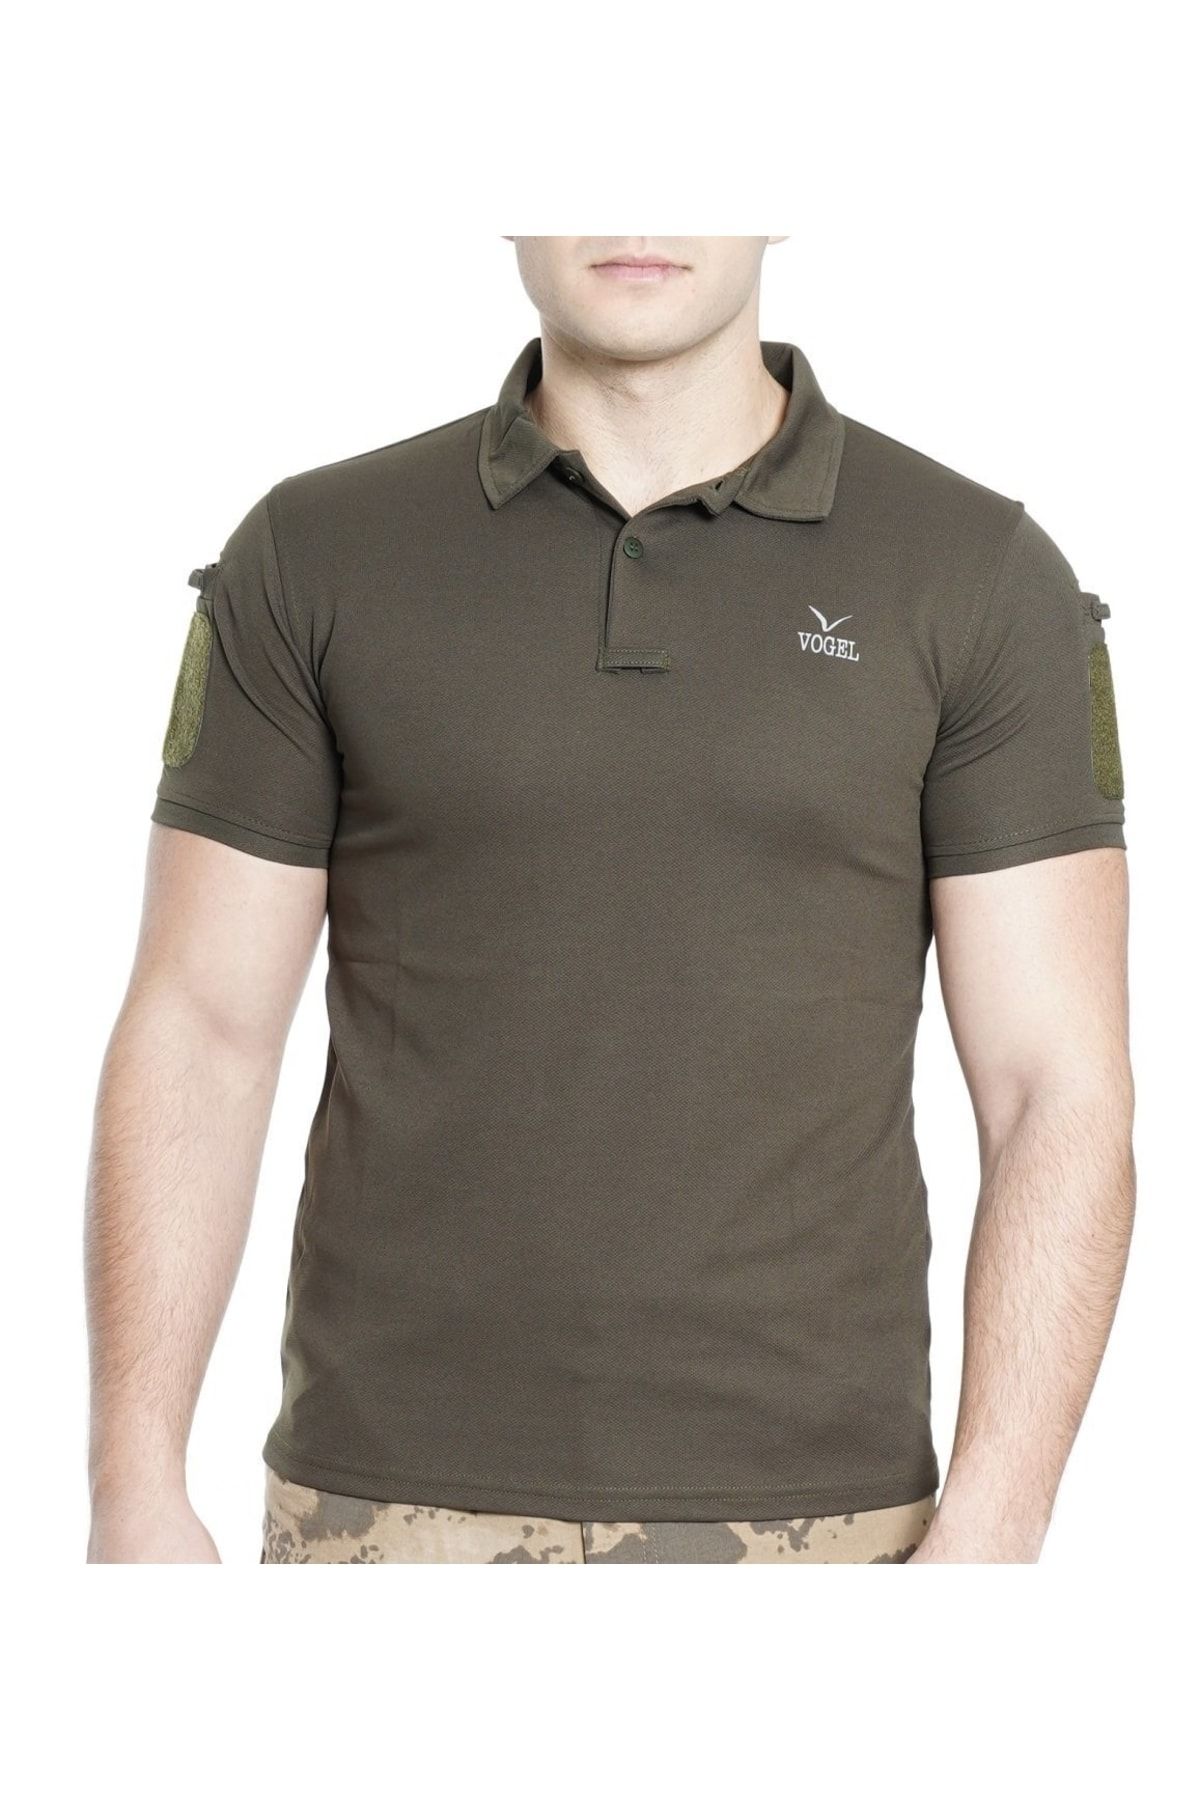 Silyon Askeri Giyim Taktik Tişört Lacoste Yaka Tactical T-shirt